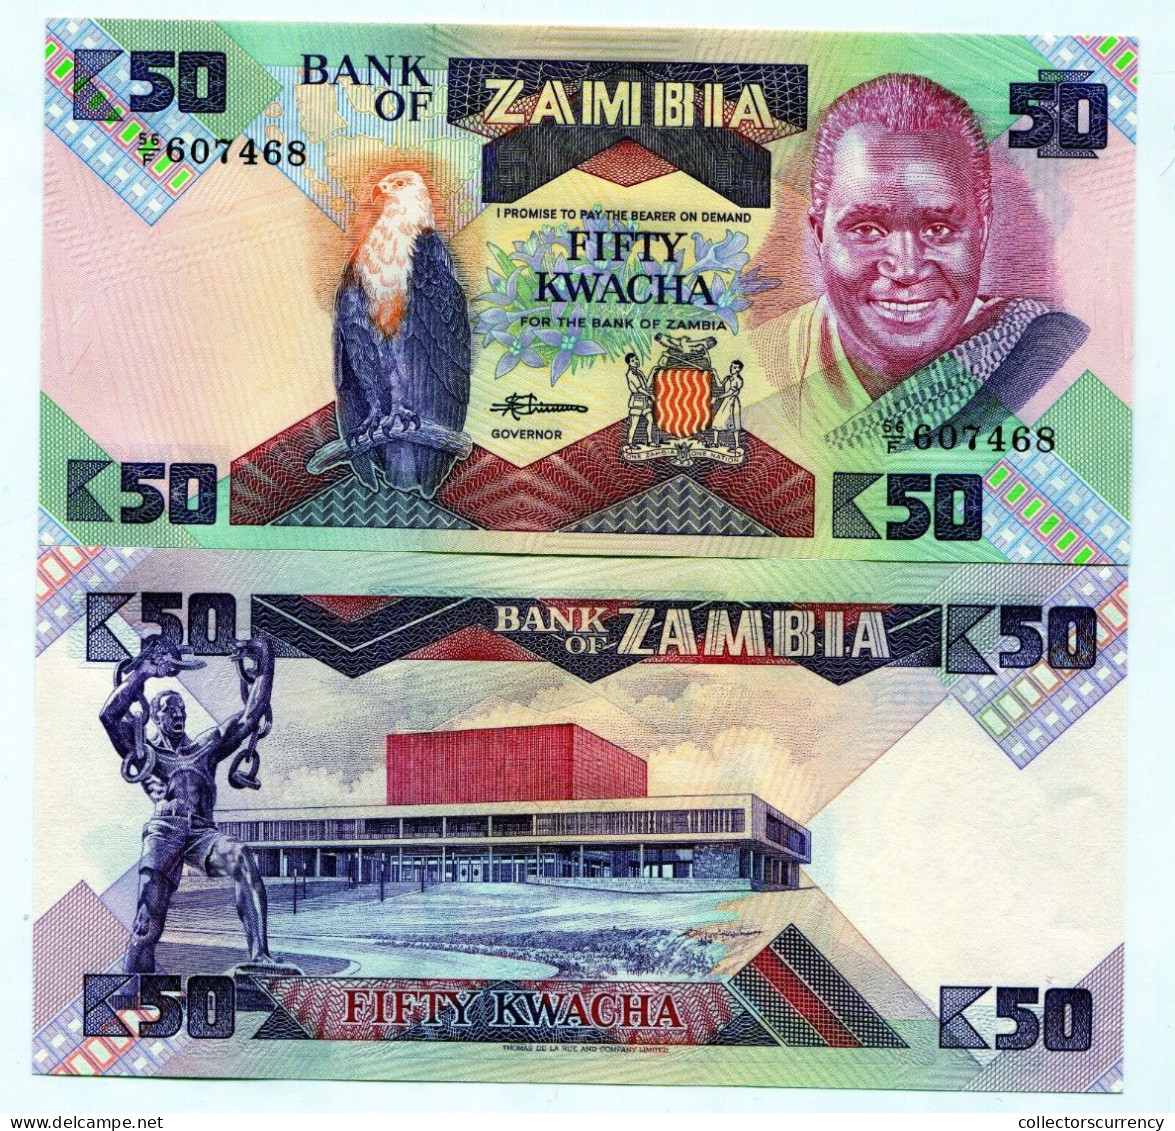 Zambia 50 Kwacha UNC P28 Banknote Paper Money 1986 X 25 Note Lot - 1/4 Bundle - Sambia